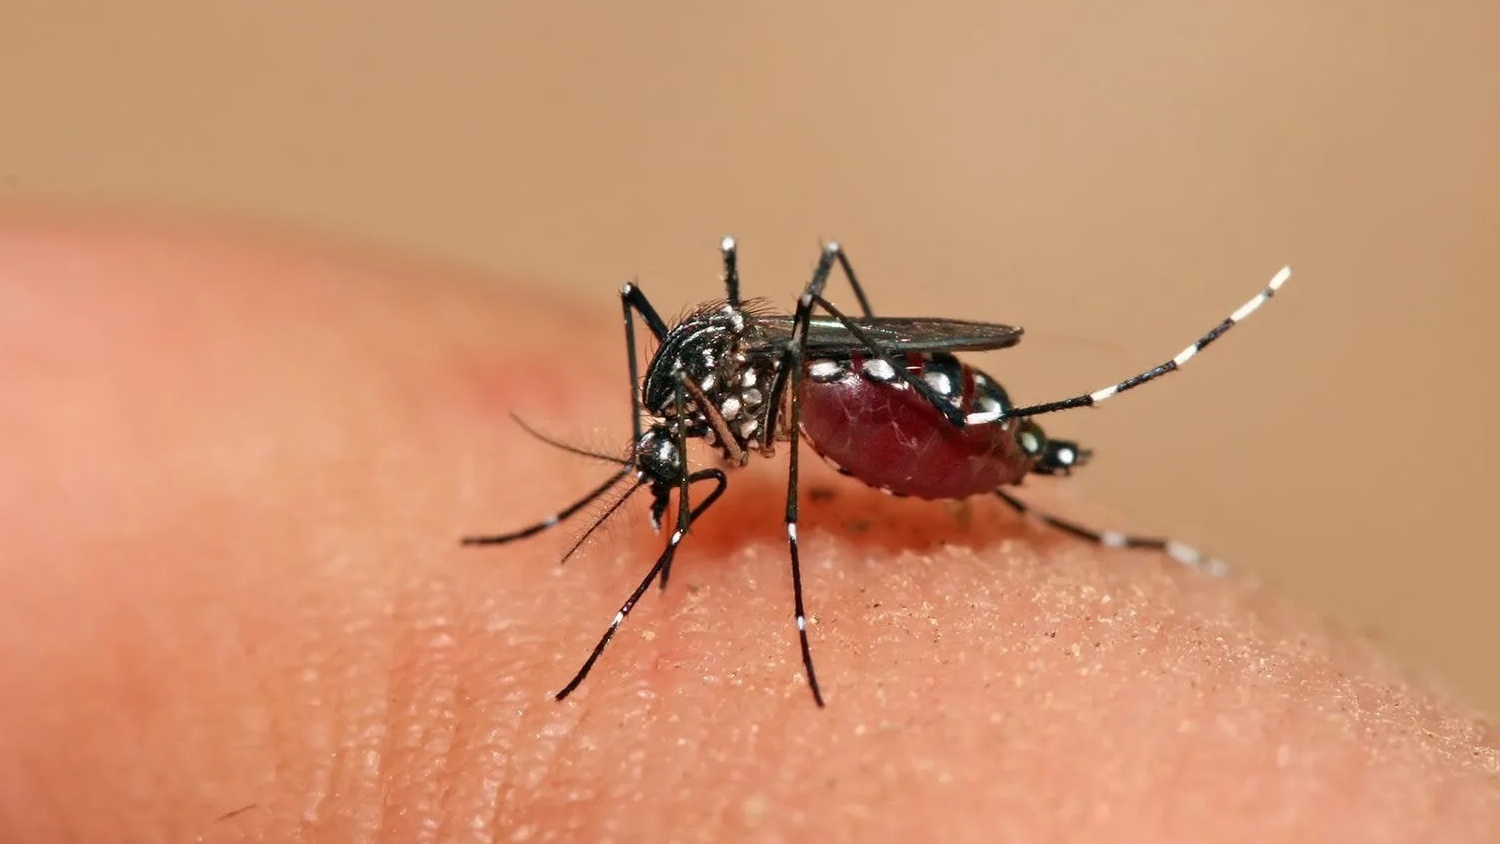 Có cách nào để giảm thiểu sự tác động của muỗi đối với những người có nhóm máu dễ bị đốt?
